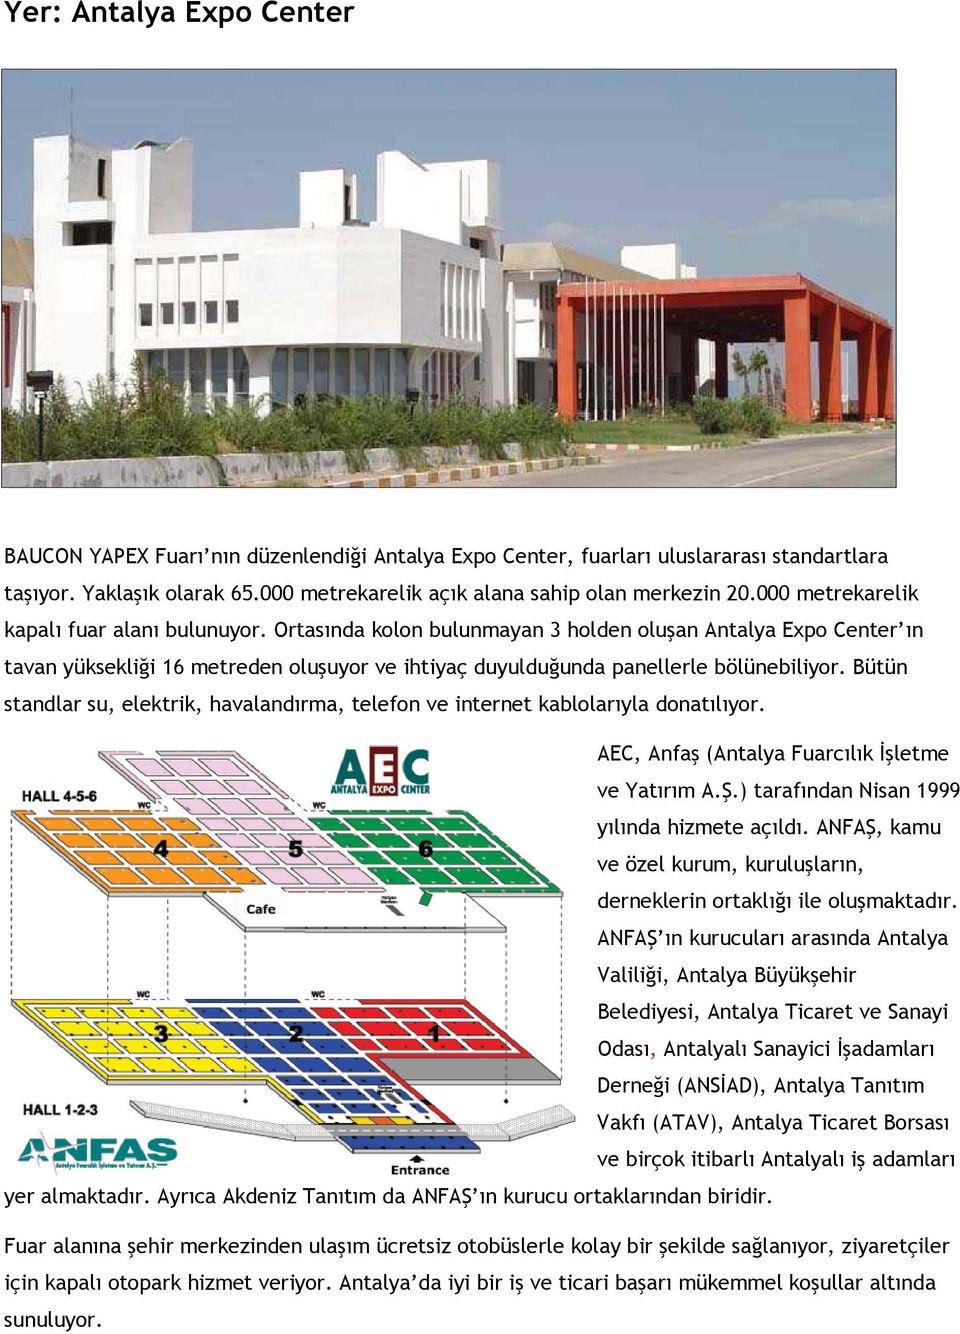 Bütün standlar su, elektrik, havalandırma, telefon ve internet kablolarıyla donatılıyor. AEC, Anfaş (Antalya Fuarcılık İşletme ve Yatırım A.Ş.) tarafından Nisan 1999 yılında hizmete açıldı.